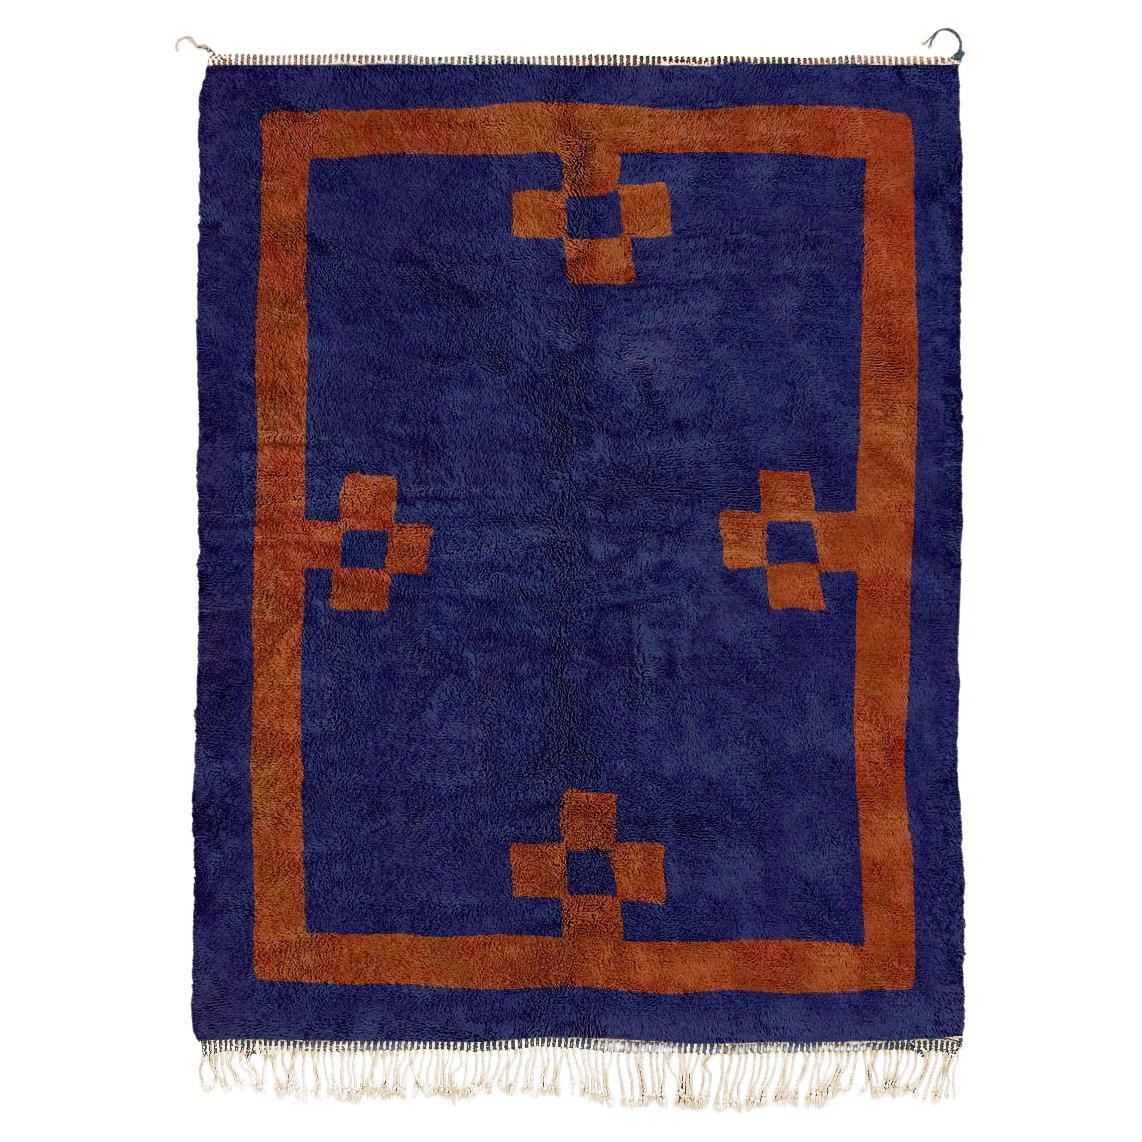 Tapis marocain Beni Mrirt, couleur bleu profond, motif de croix rouges, fabriqué sur commande